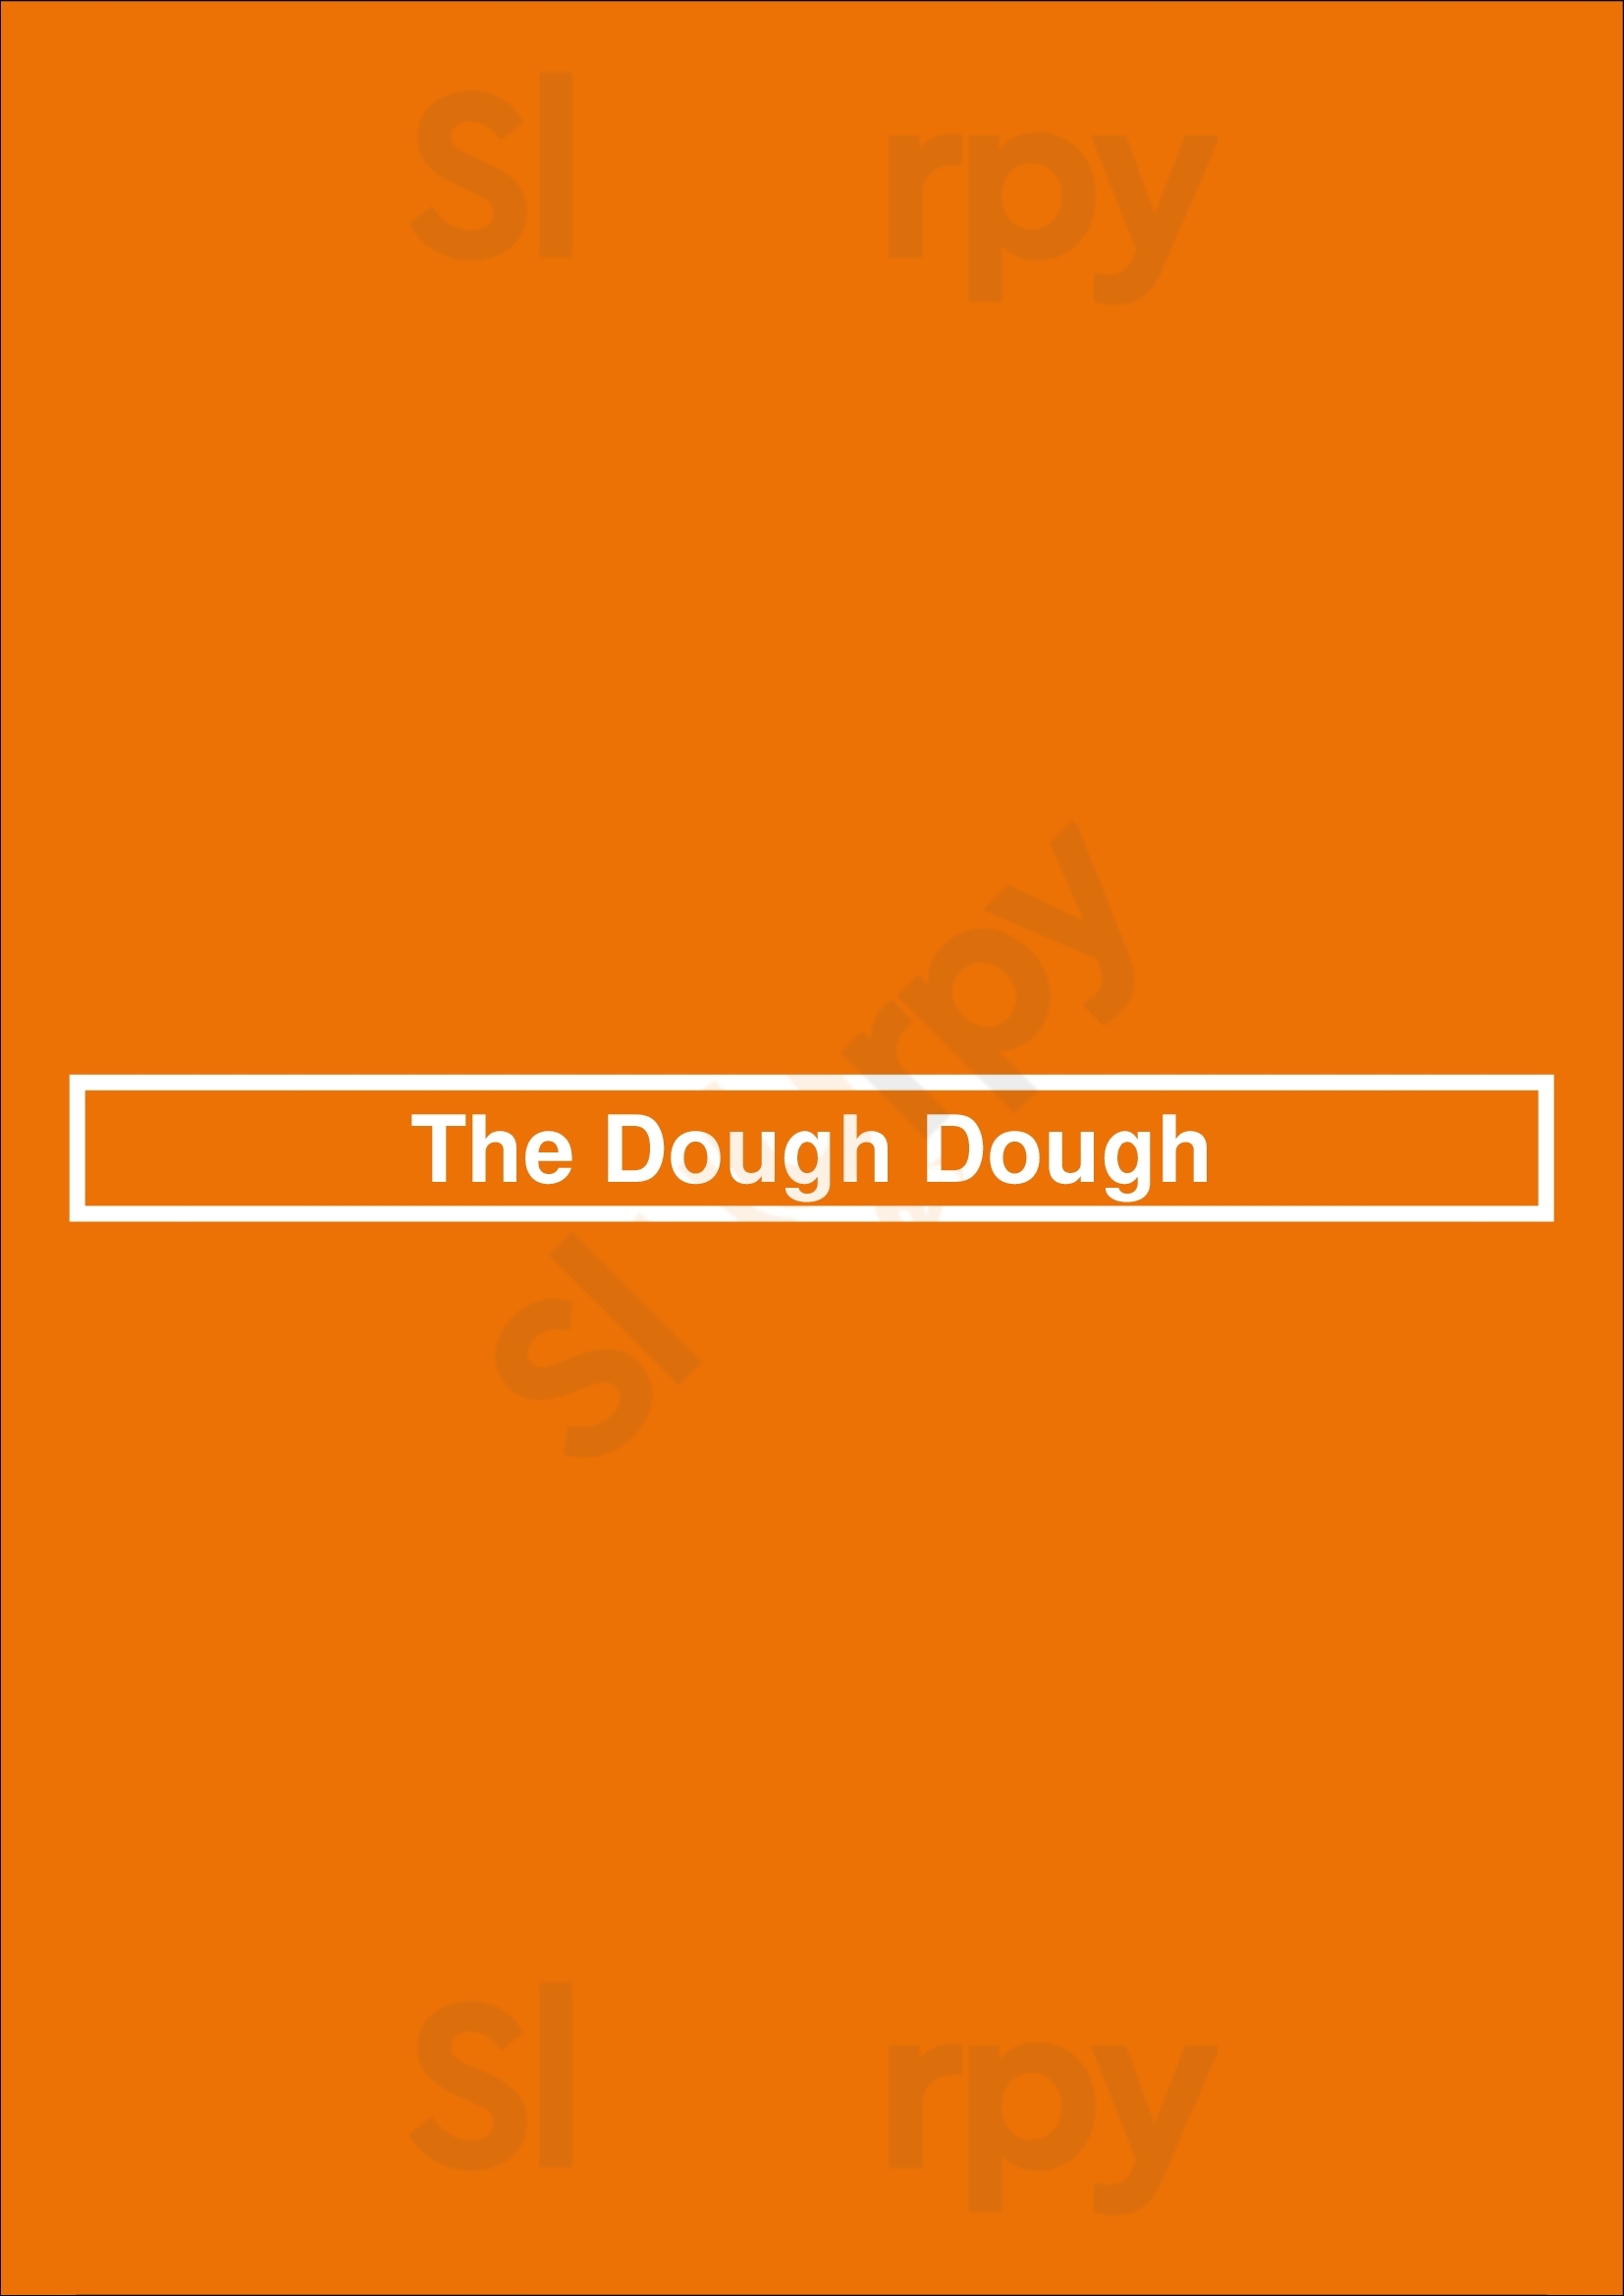 The Dough Dough Dallas Menu - 1